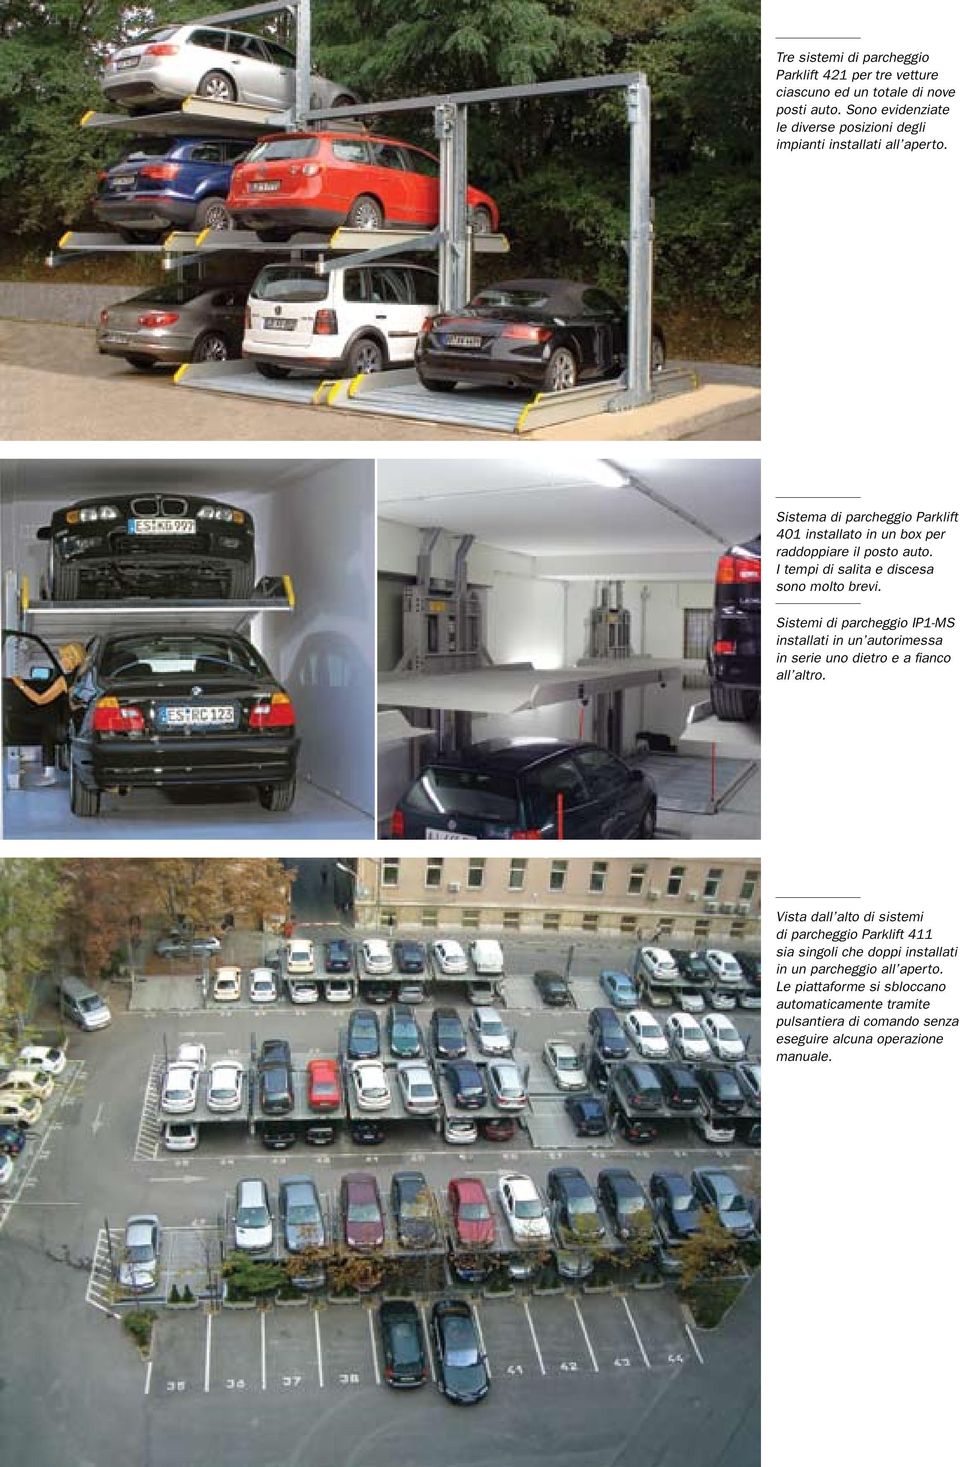 Sistema di parcheggio Parklift 401 installato in un box per raddoppiare il posto auto. I tempi di salita e discesa sono molto brevi.